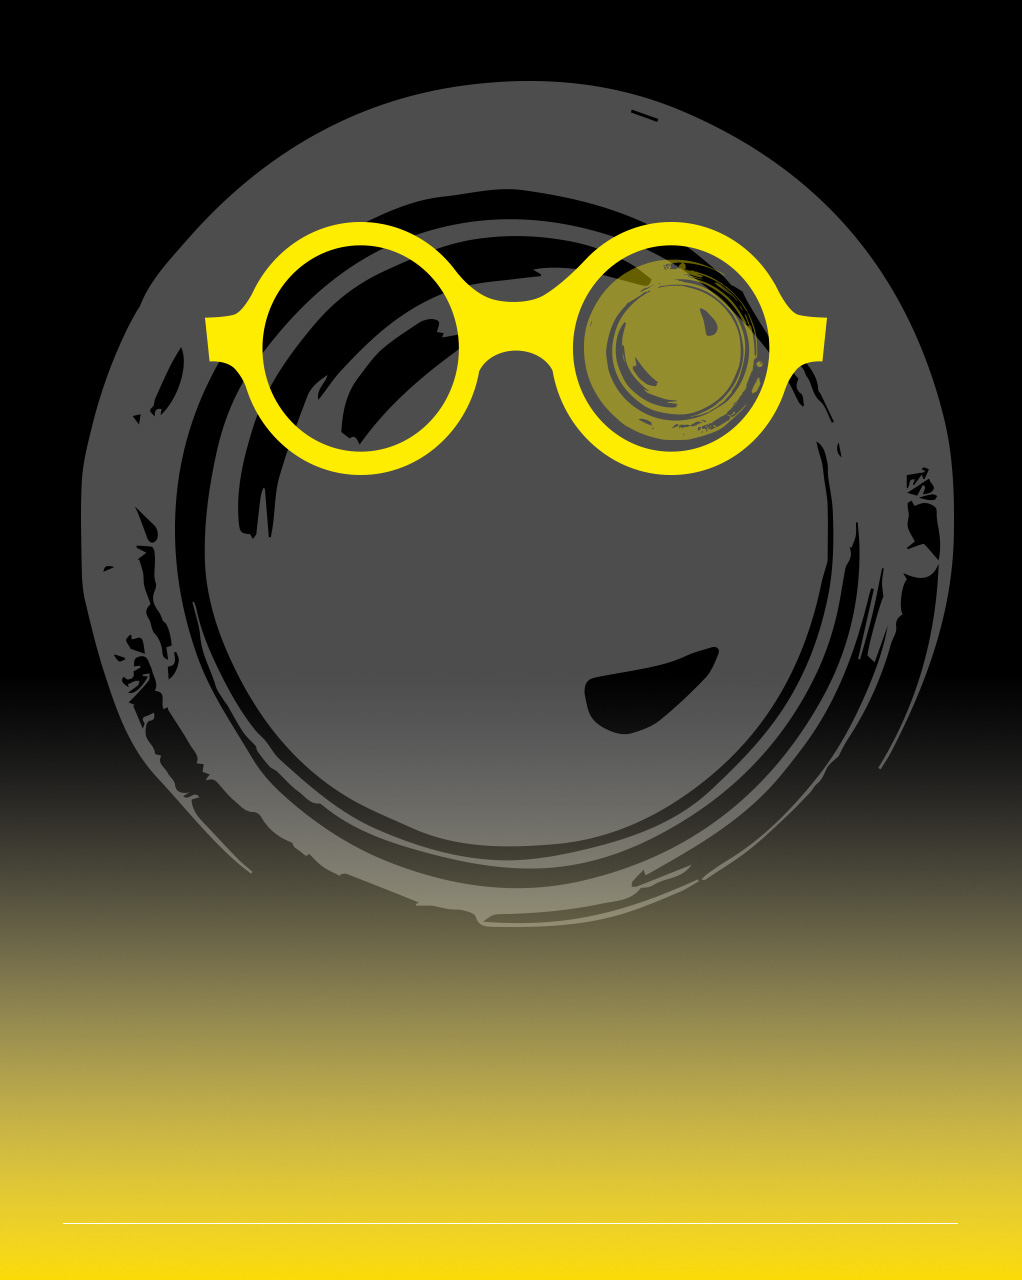 Immagine con una montatura di occhiali gialla nel quale in una delle lenti si vede un obiettivo fotografico